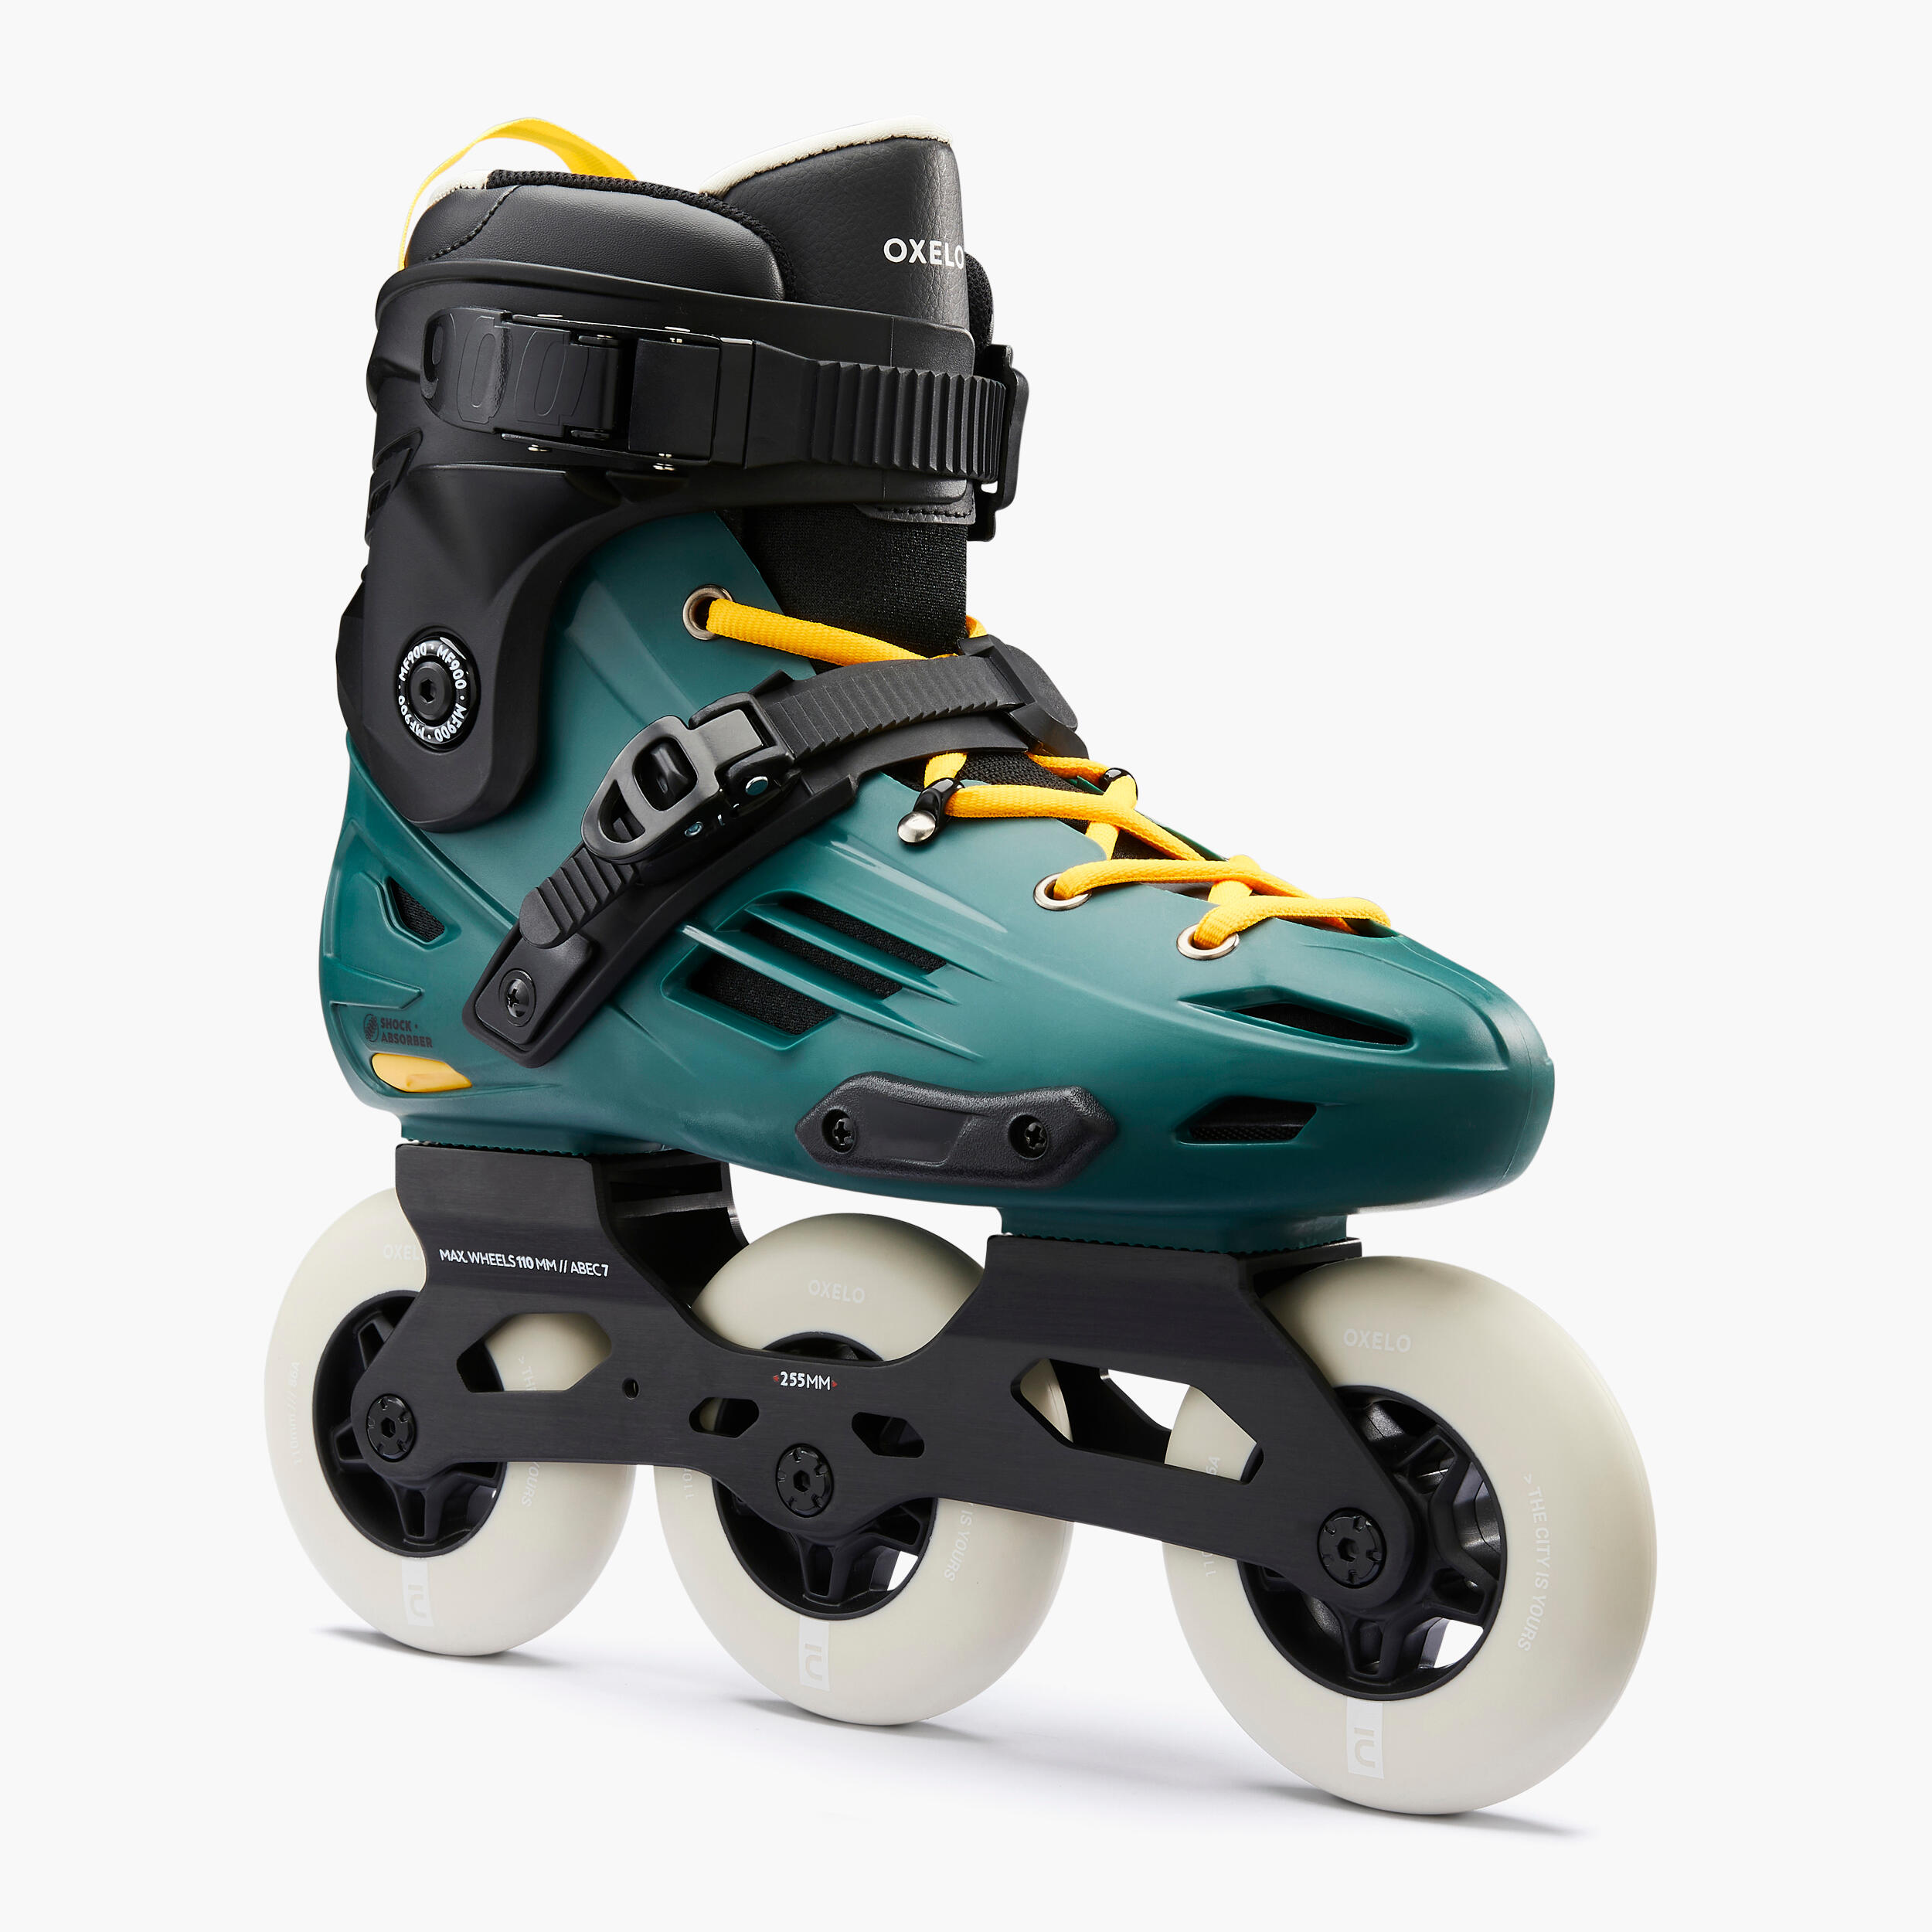 Discoroller Schuhe mit LED Leucht Räder für Kinder/Jungen/Mädchen WING Quad Skate Rollschuhe Skating Outdoor für Damen Herren und Erwachsene